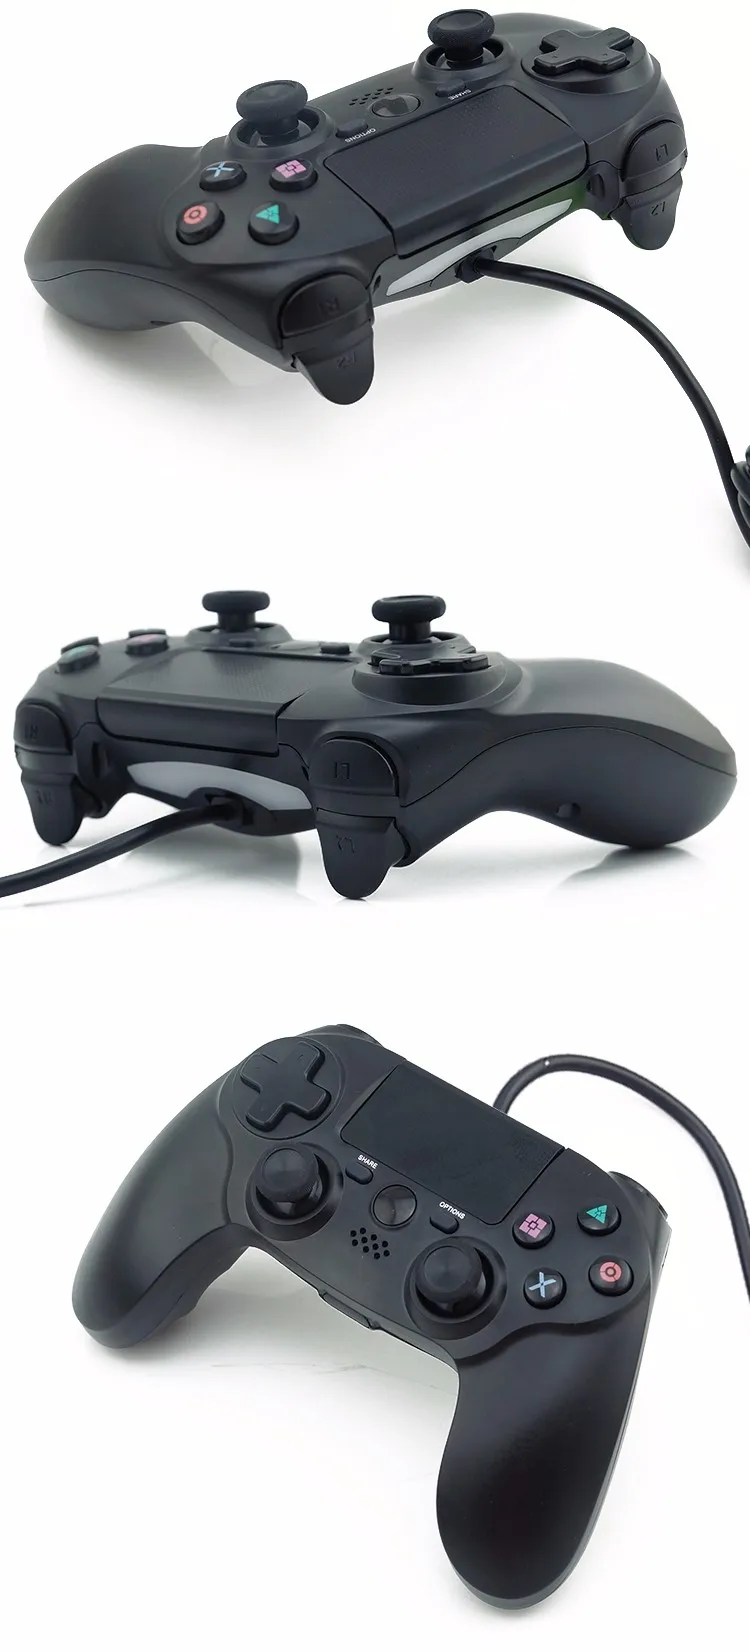 Для Playstation 4 PS4 проводной игровой контроллер двойная вибрация 6 Axies геймпады для PS4 PC MAC игровой джойстик USB джойстики кабель 10 футов